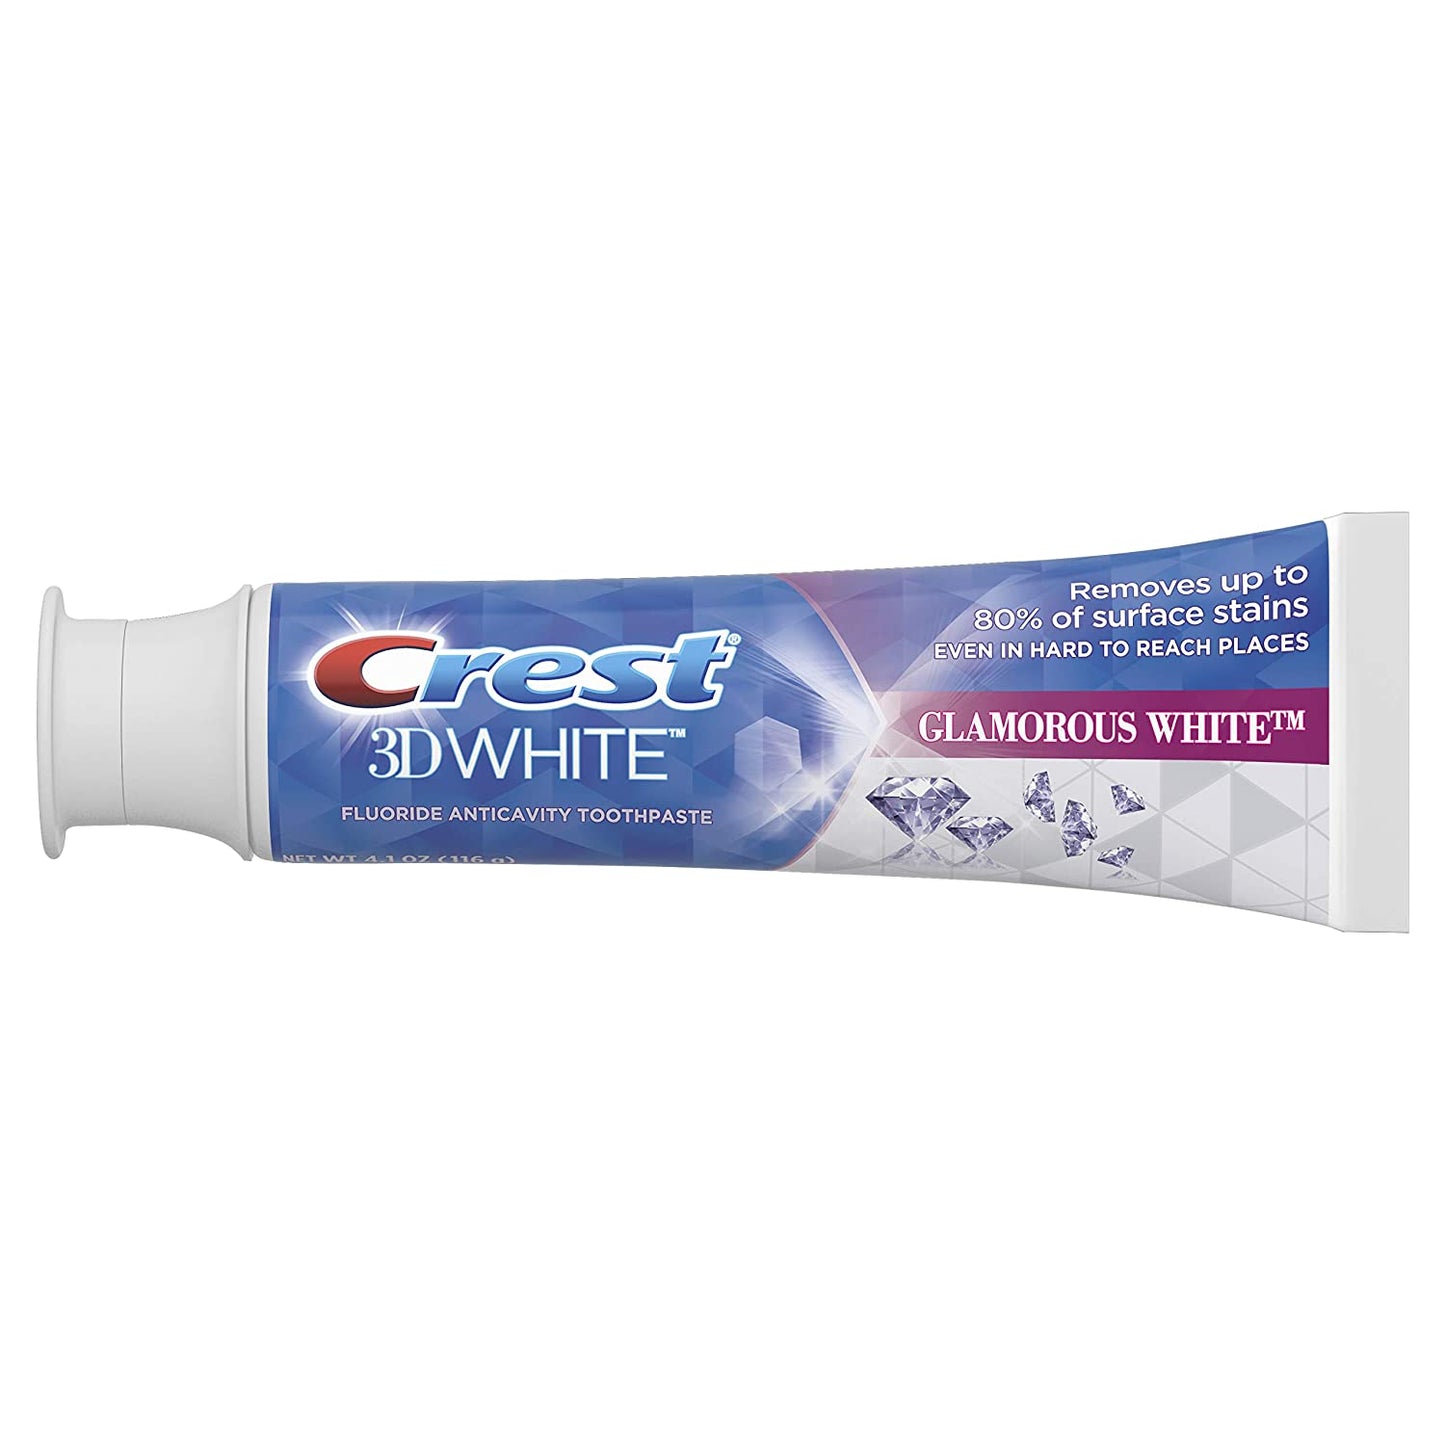 Crest Toothpaste 3D White Glamorous White, 4.1 oz